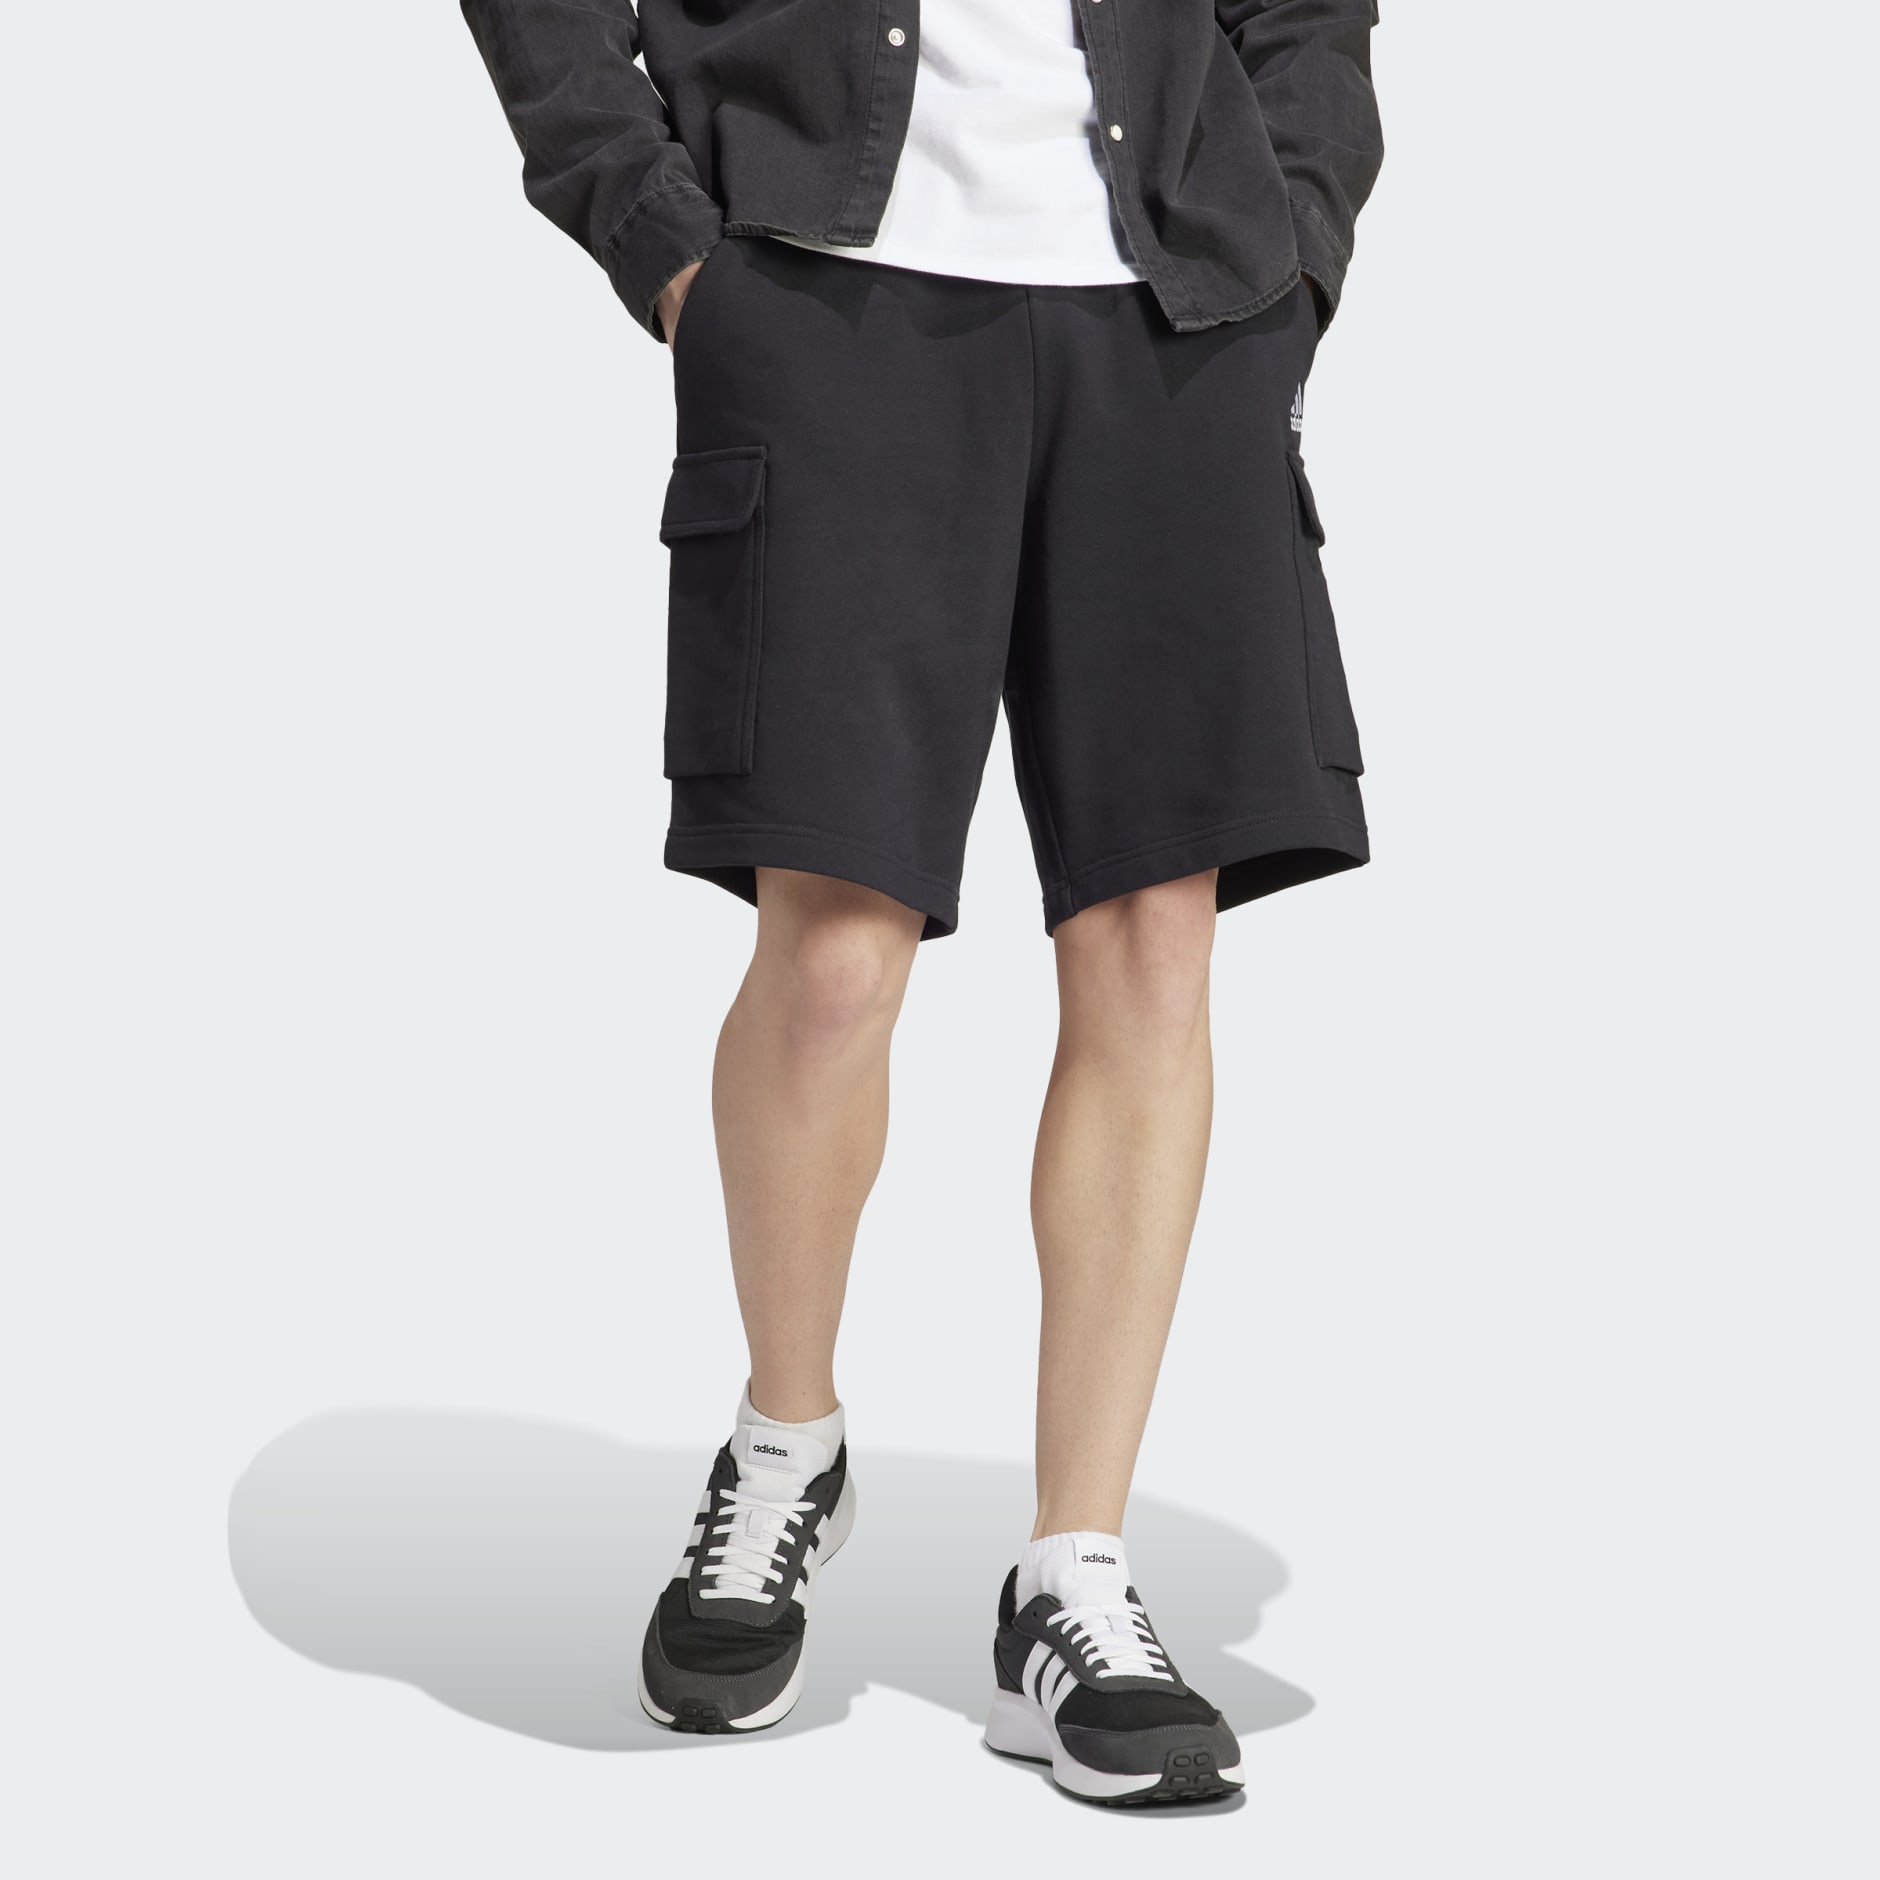 French Shorts - adidas Terry Essentials LK | Black adidas Cargo